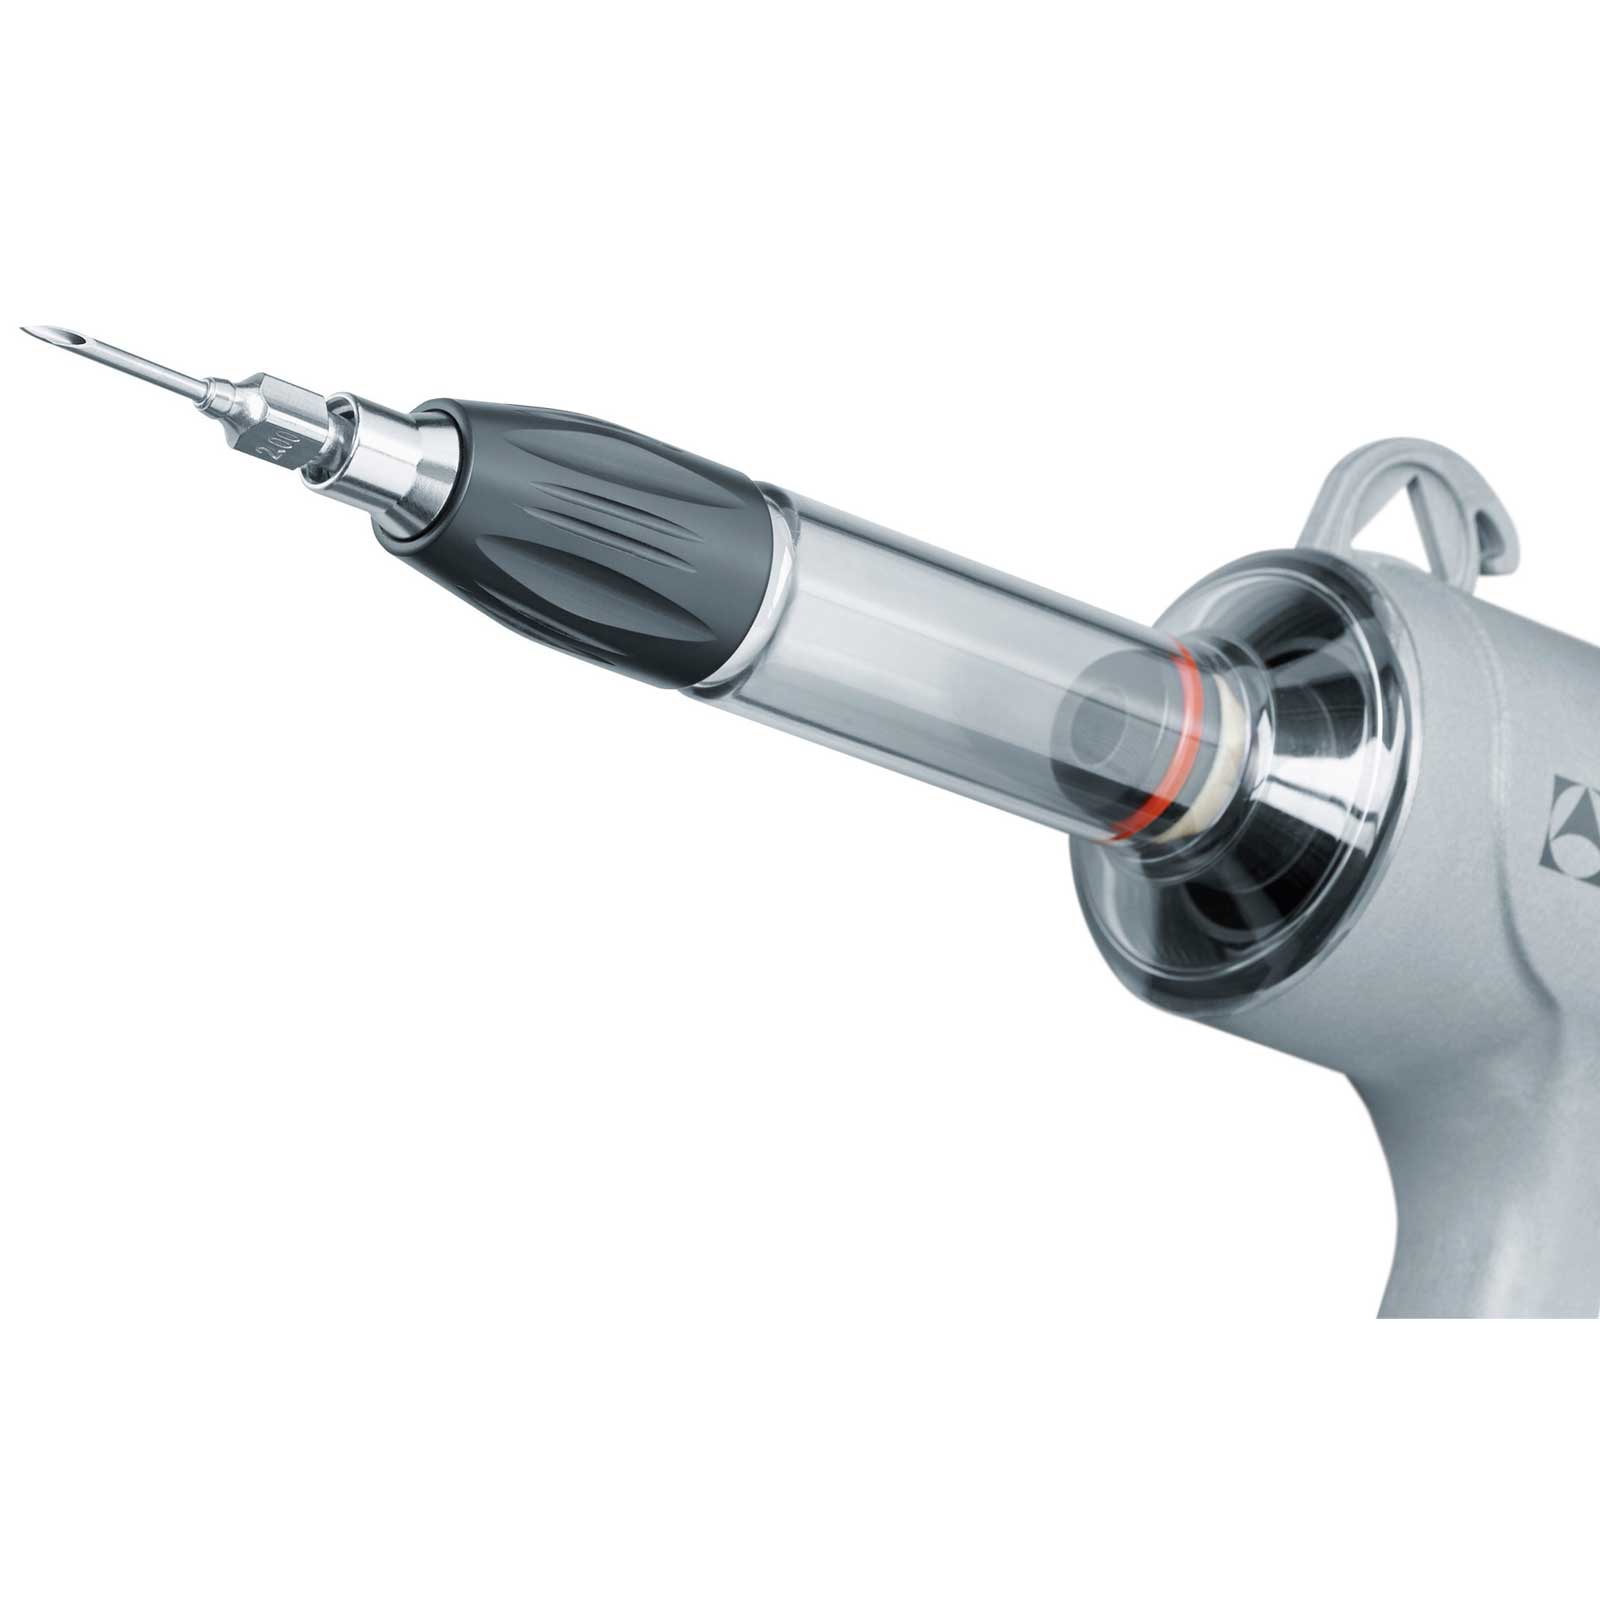 Luer-Lock adapter 12,5 ml + 30 ml injekciós fecskendőnek való átalakításhoz